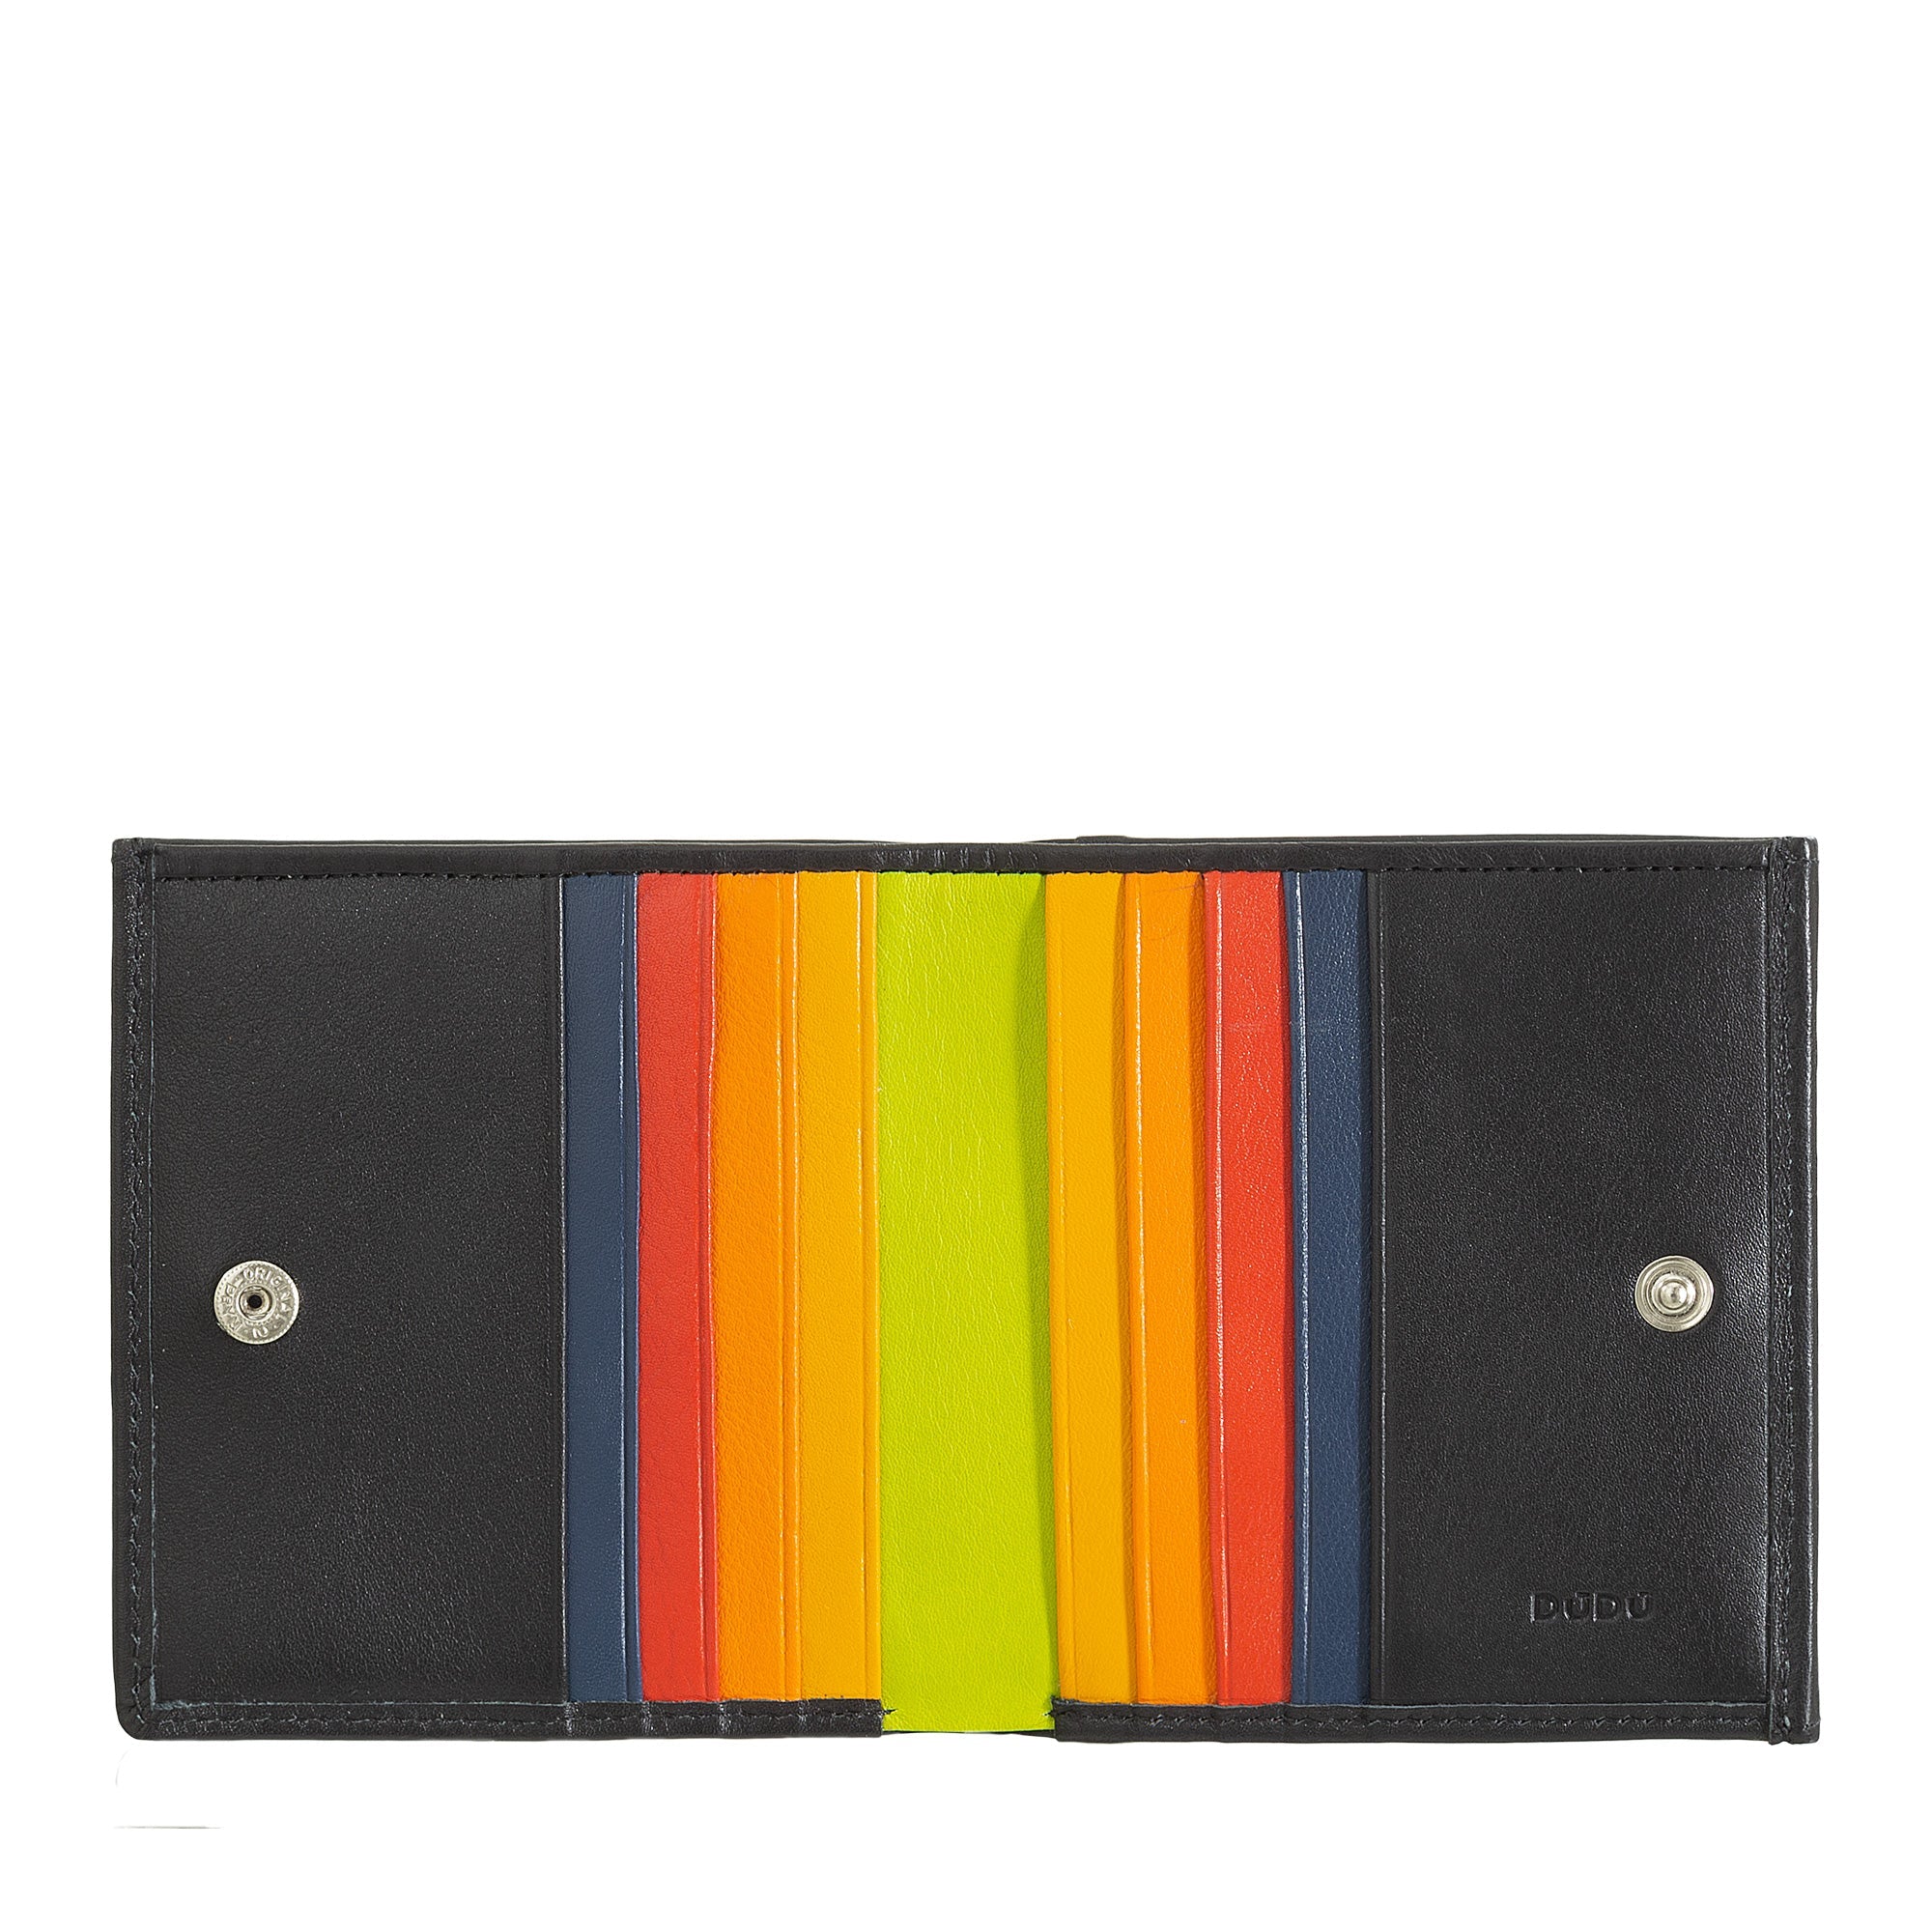 DuDu® Genuine Leather Multi-Color Wallet for Men